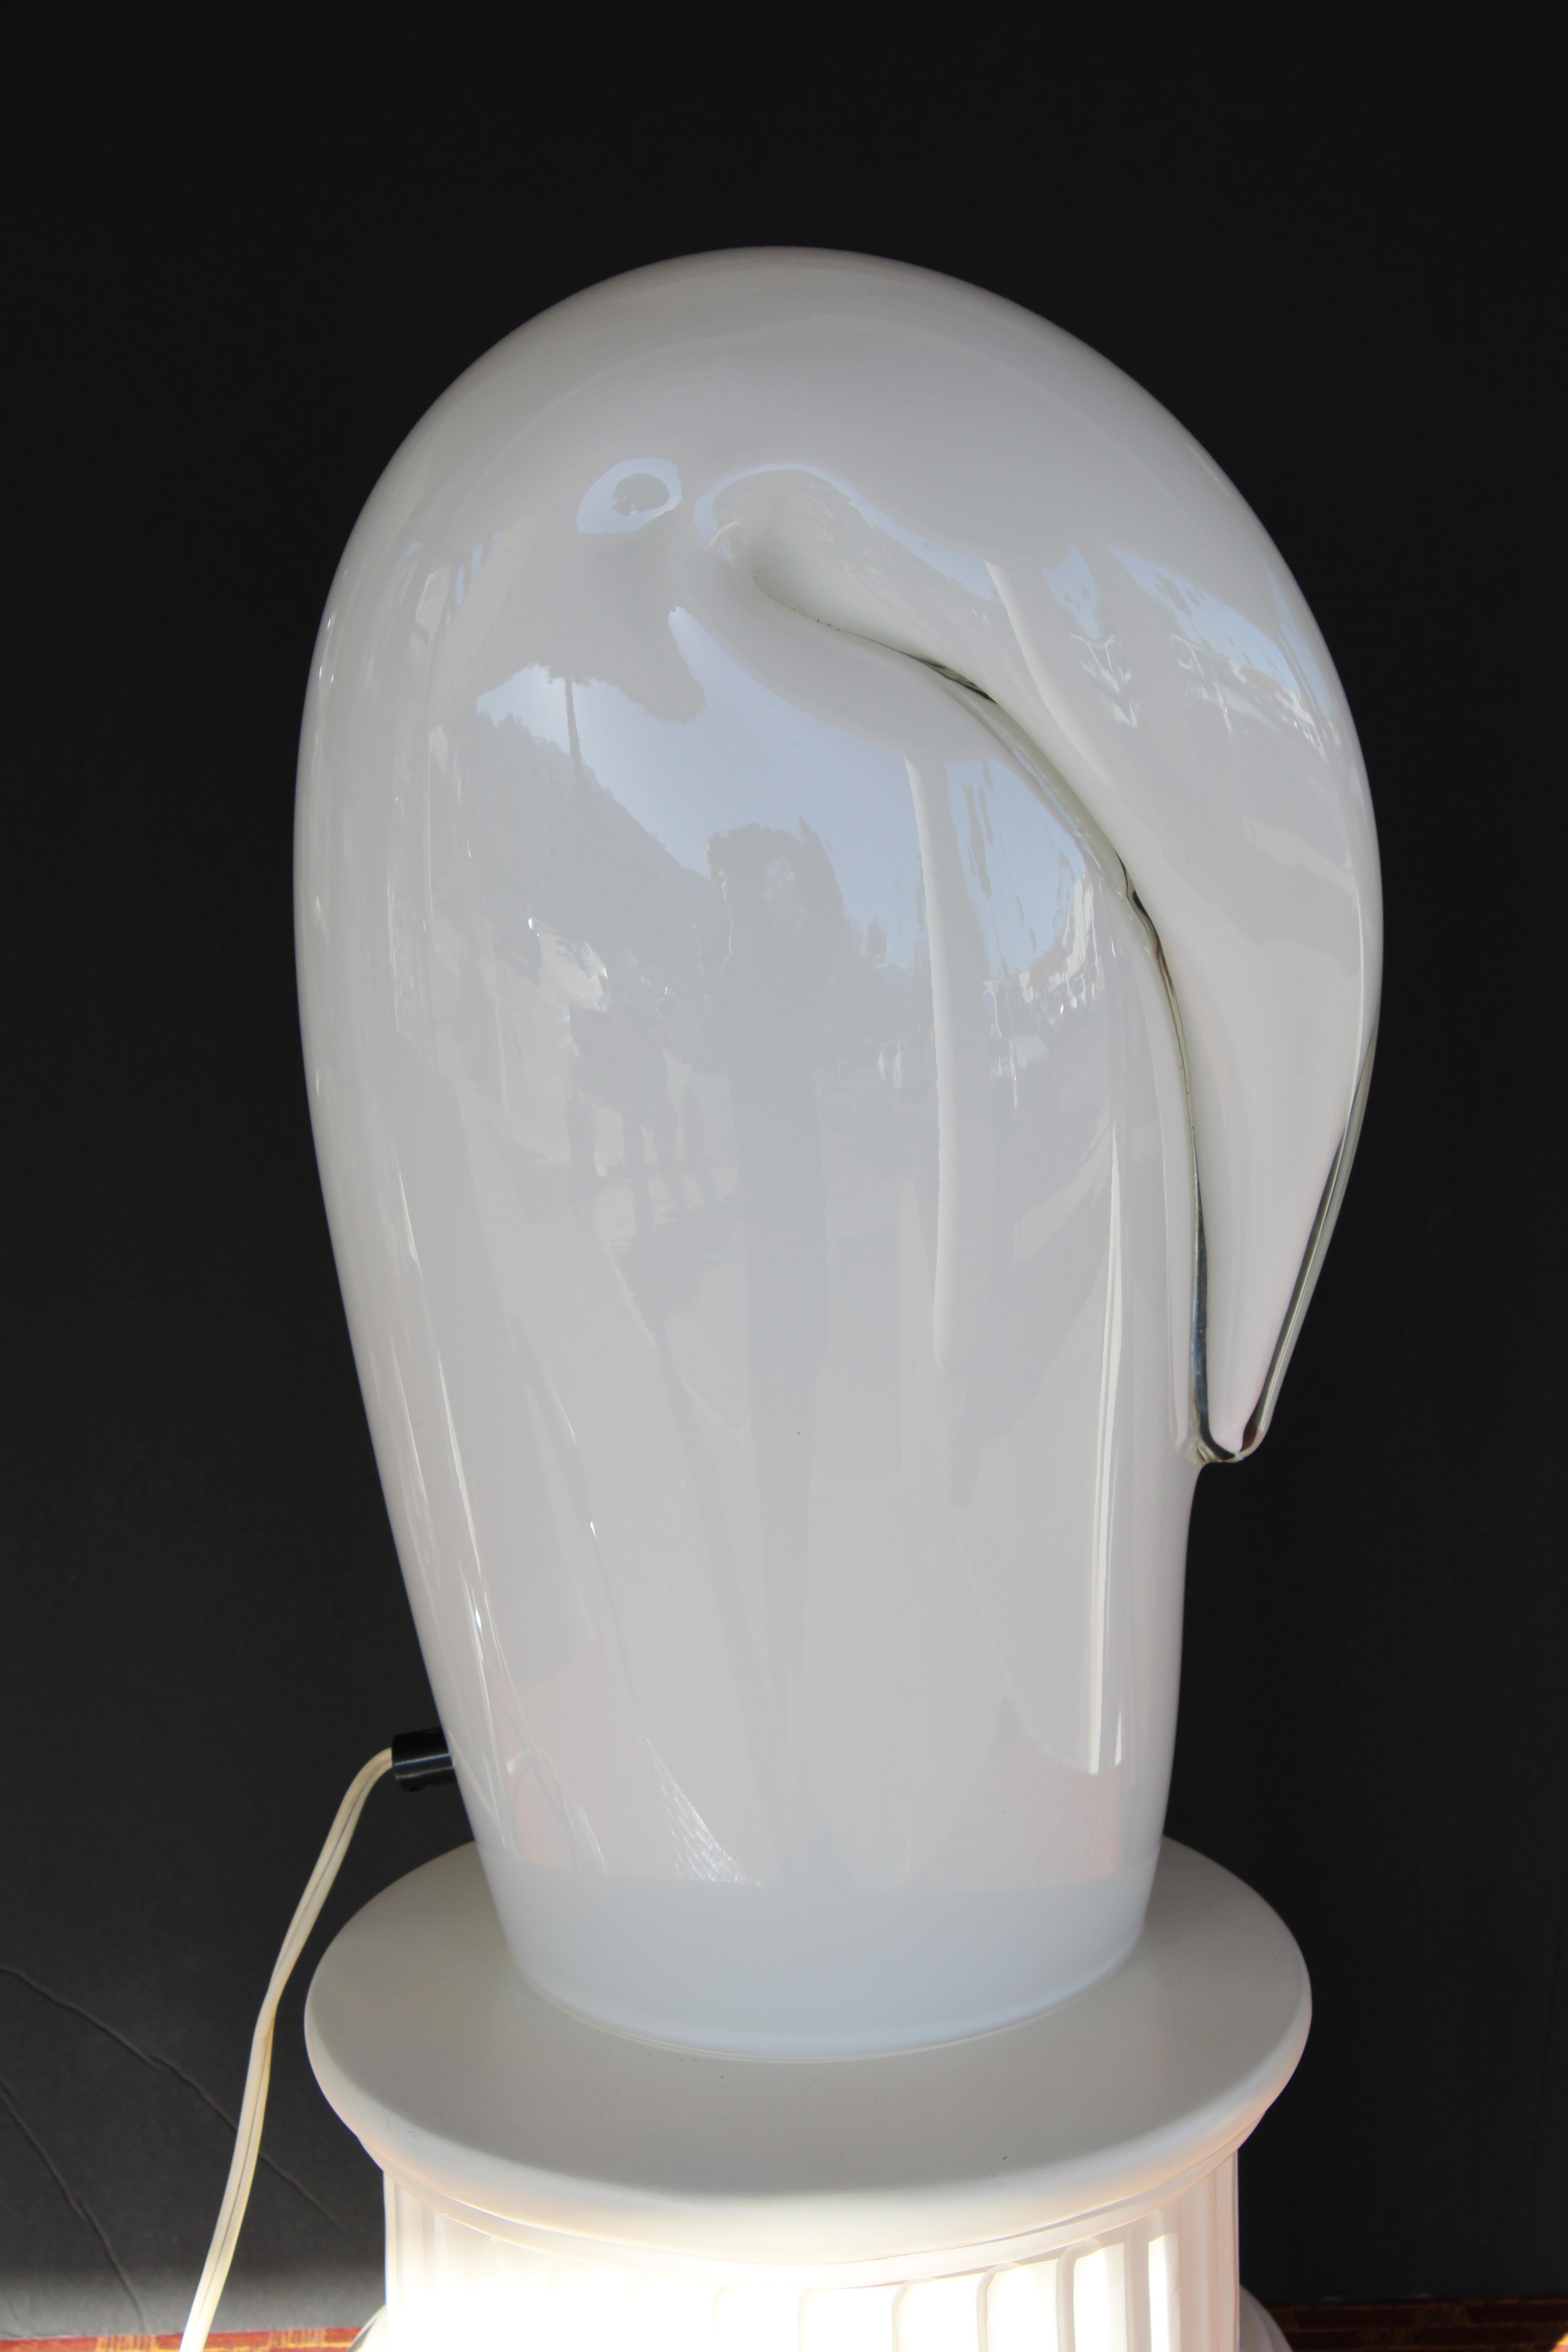 Eine dramatische und skulpturale Leuchte von Luciano Vistosi für Vetri. Lampe ist beeindruckend Messung 15,5 